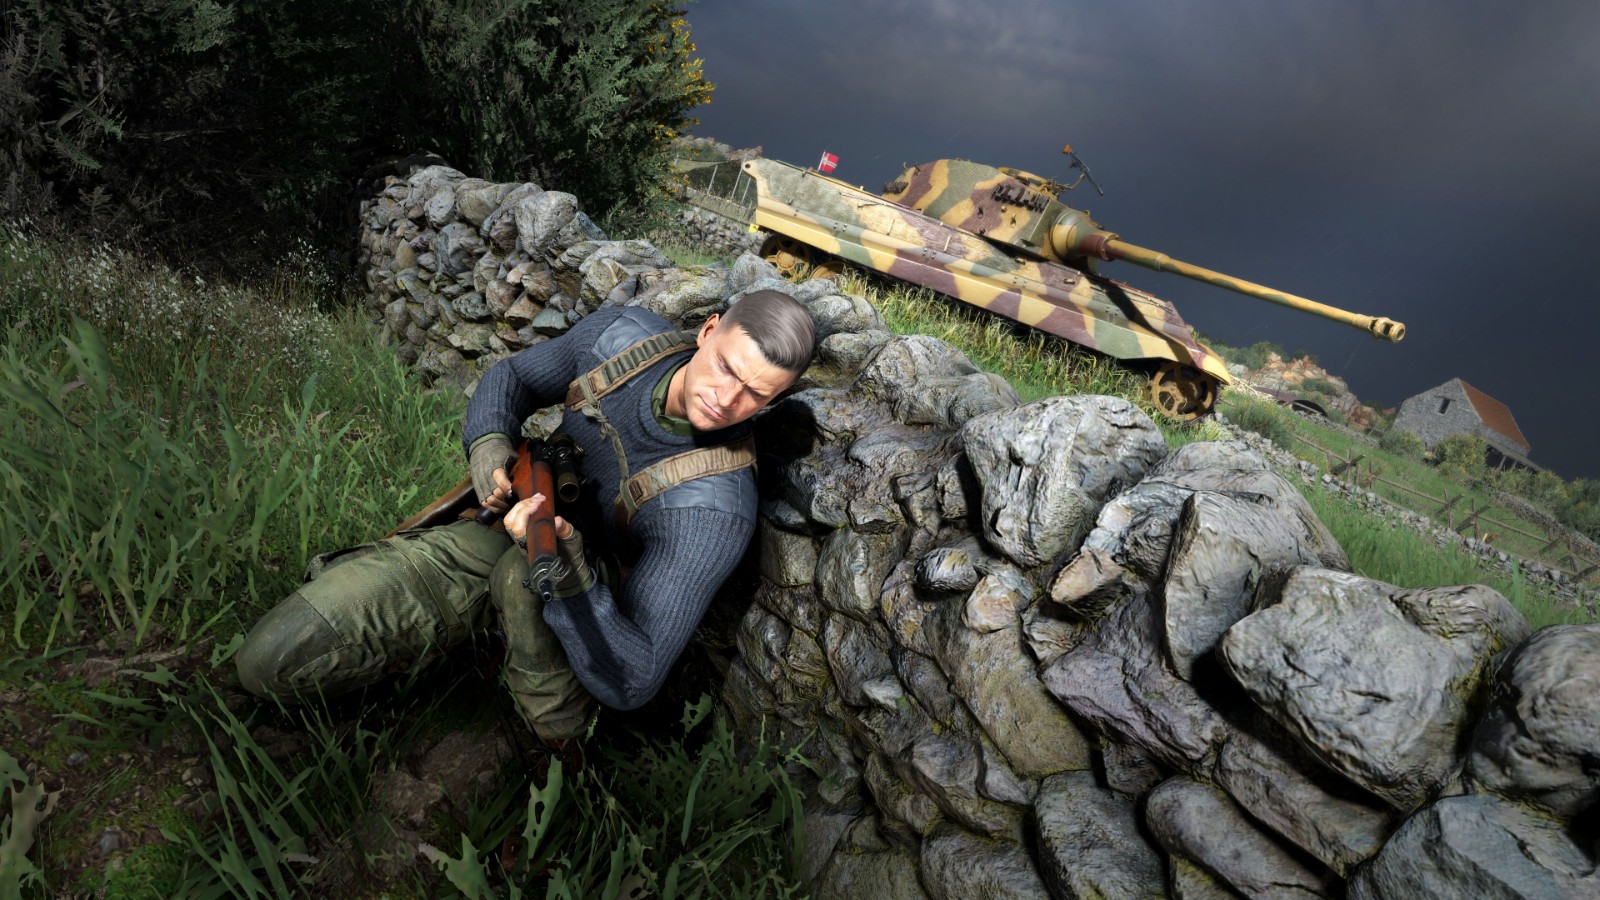 官方發布《狙擊精英5》新預告「神槍手」 展示遊戲中武器